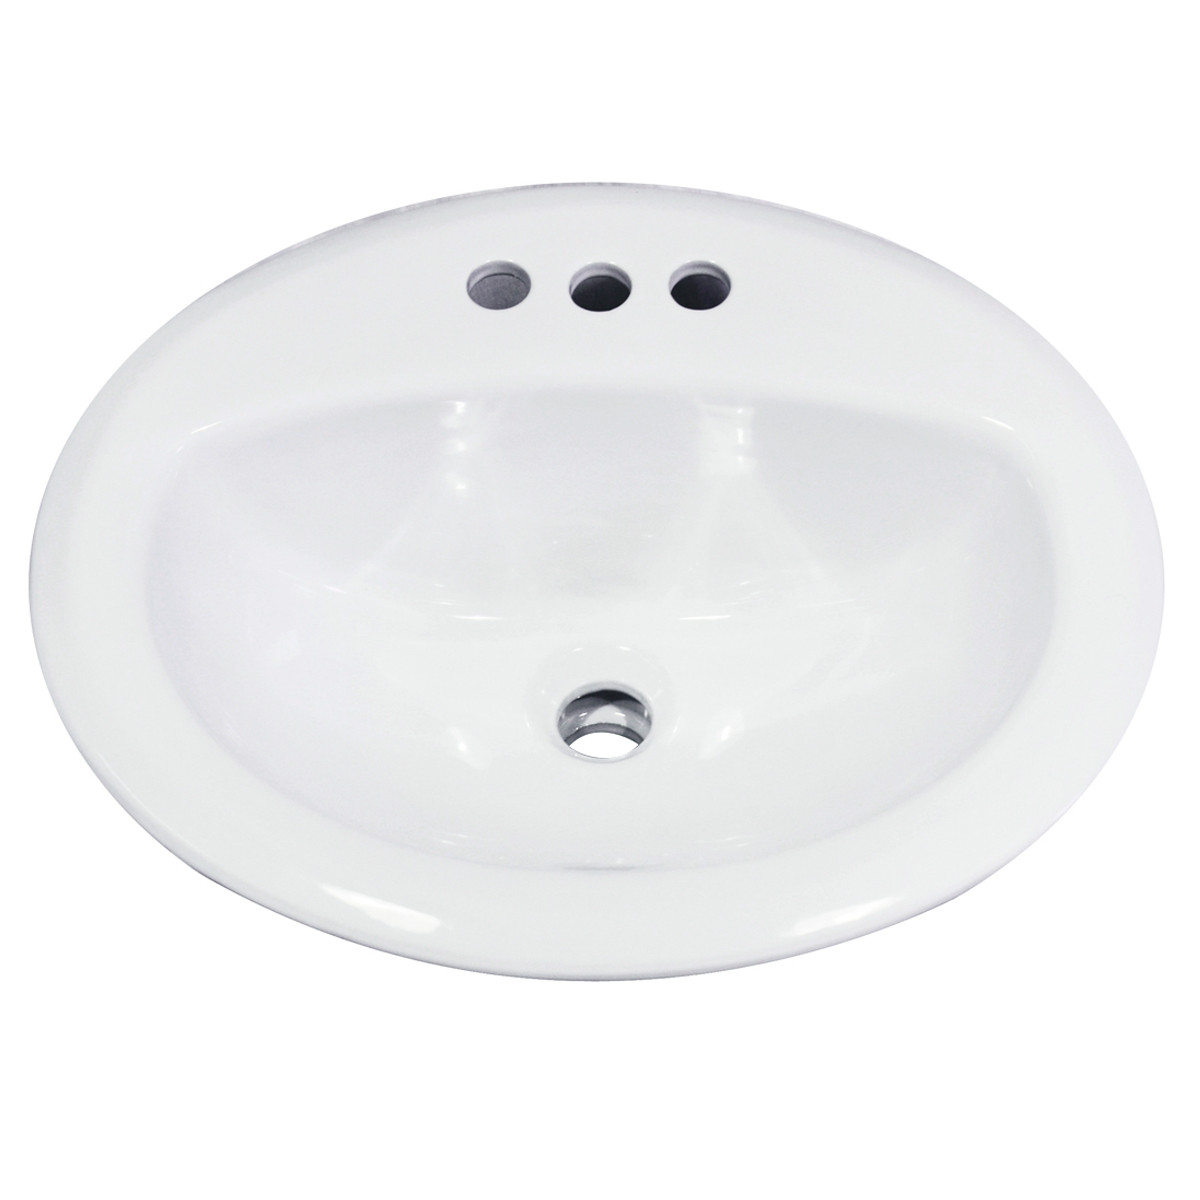 Nantucket Sinks DI2017-4 Drop-In Oval Ceramic Bathroom Vanity Sink In White